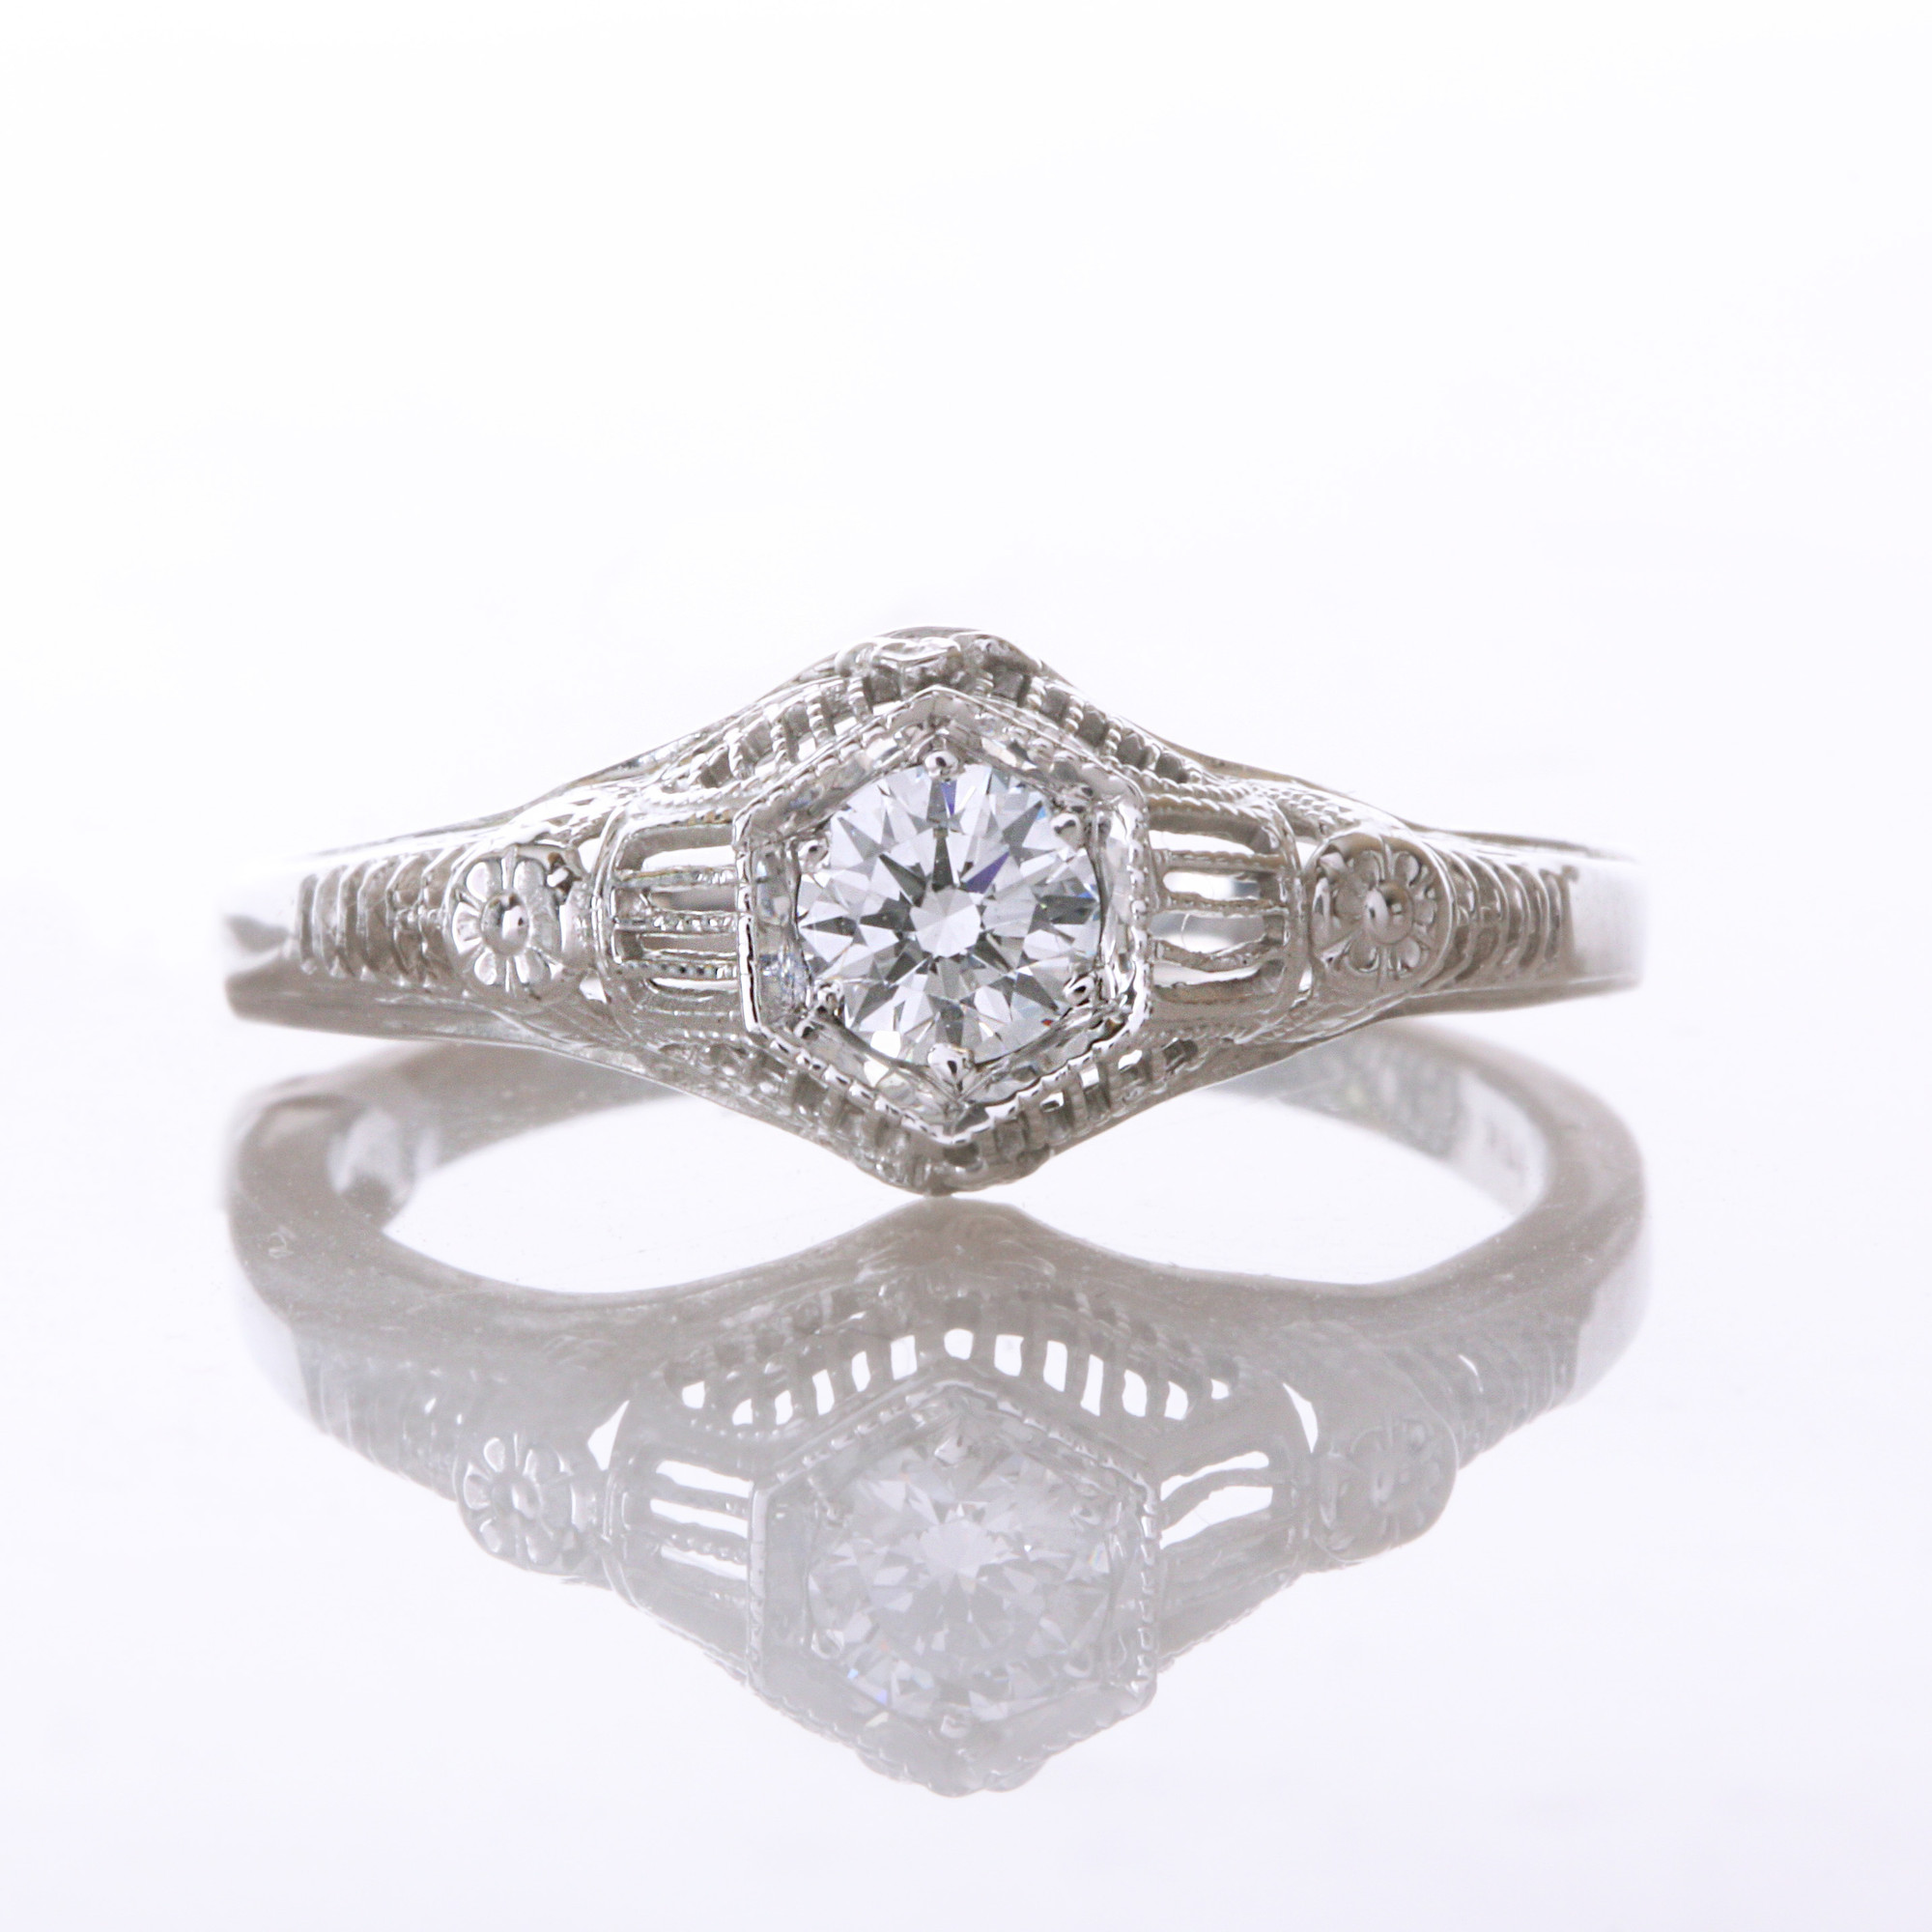 14k White Gold & Diamond Engagement Ring by Hugo Kohl